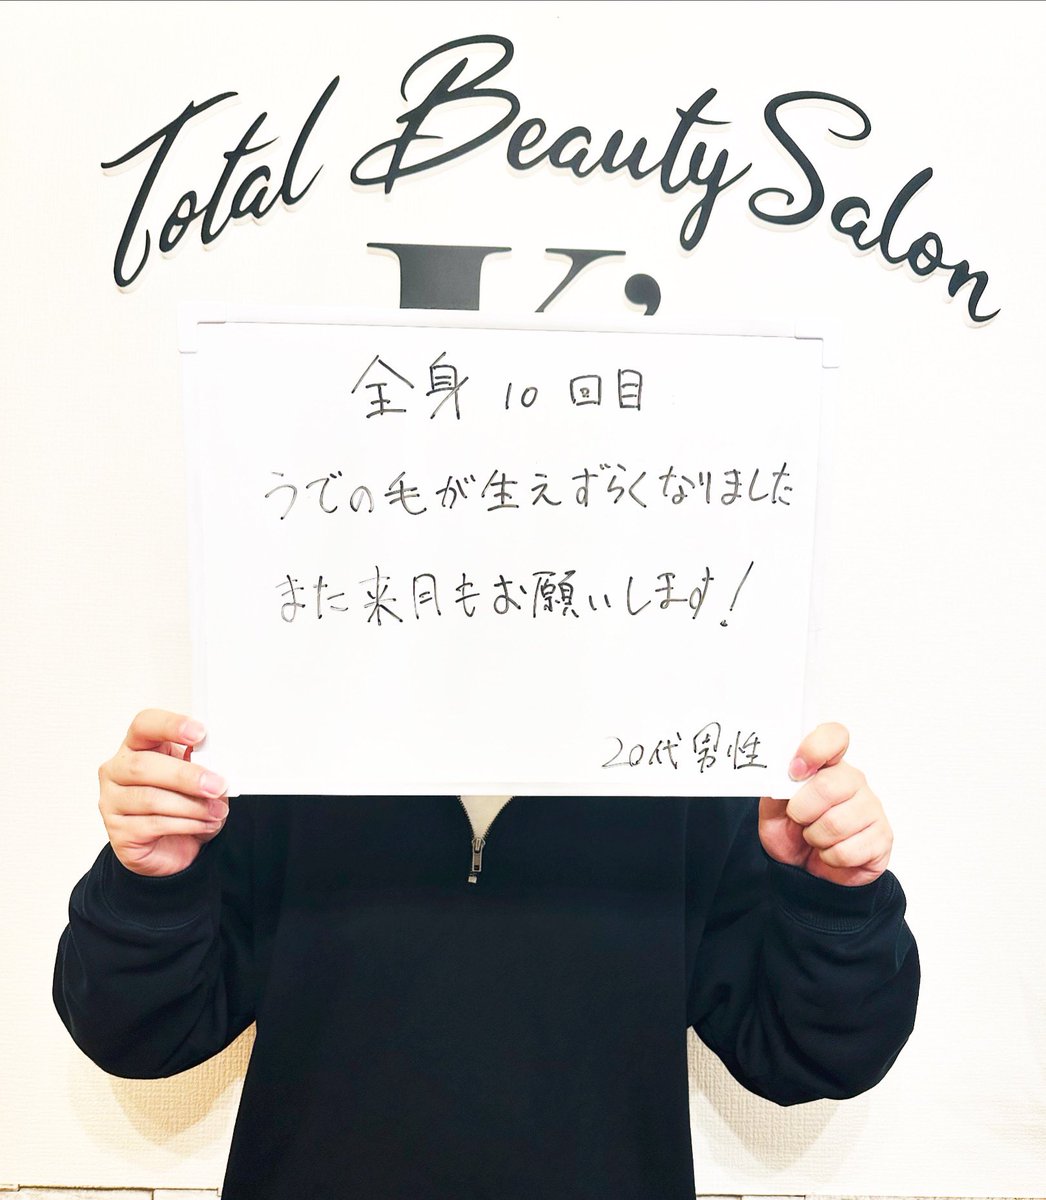 beauty_salon_Ks tweet picture